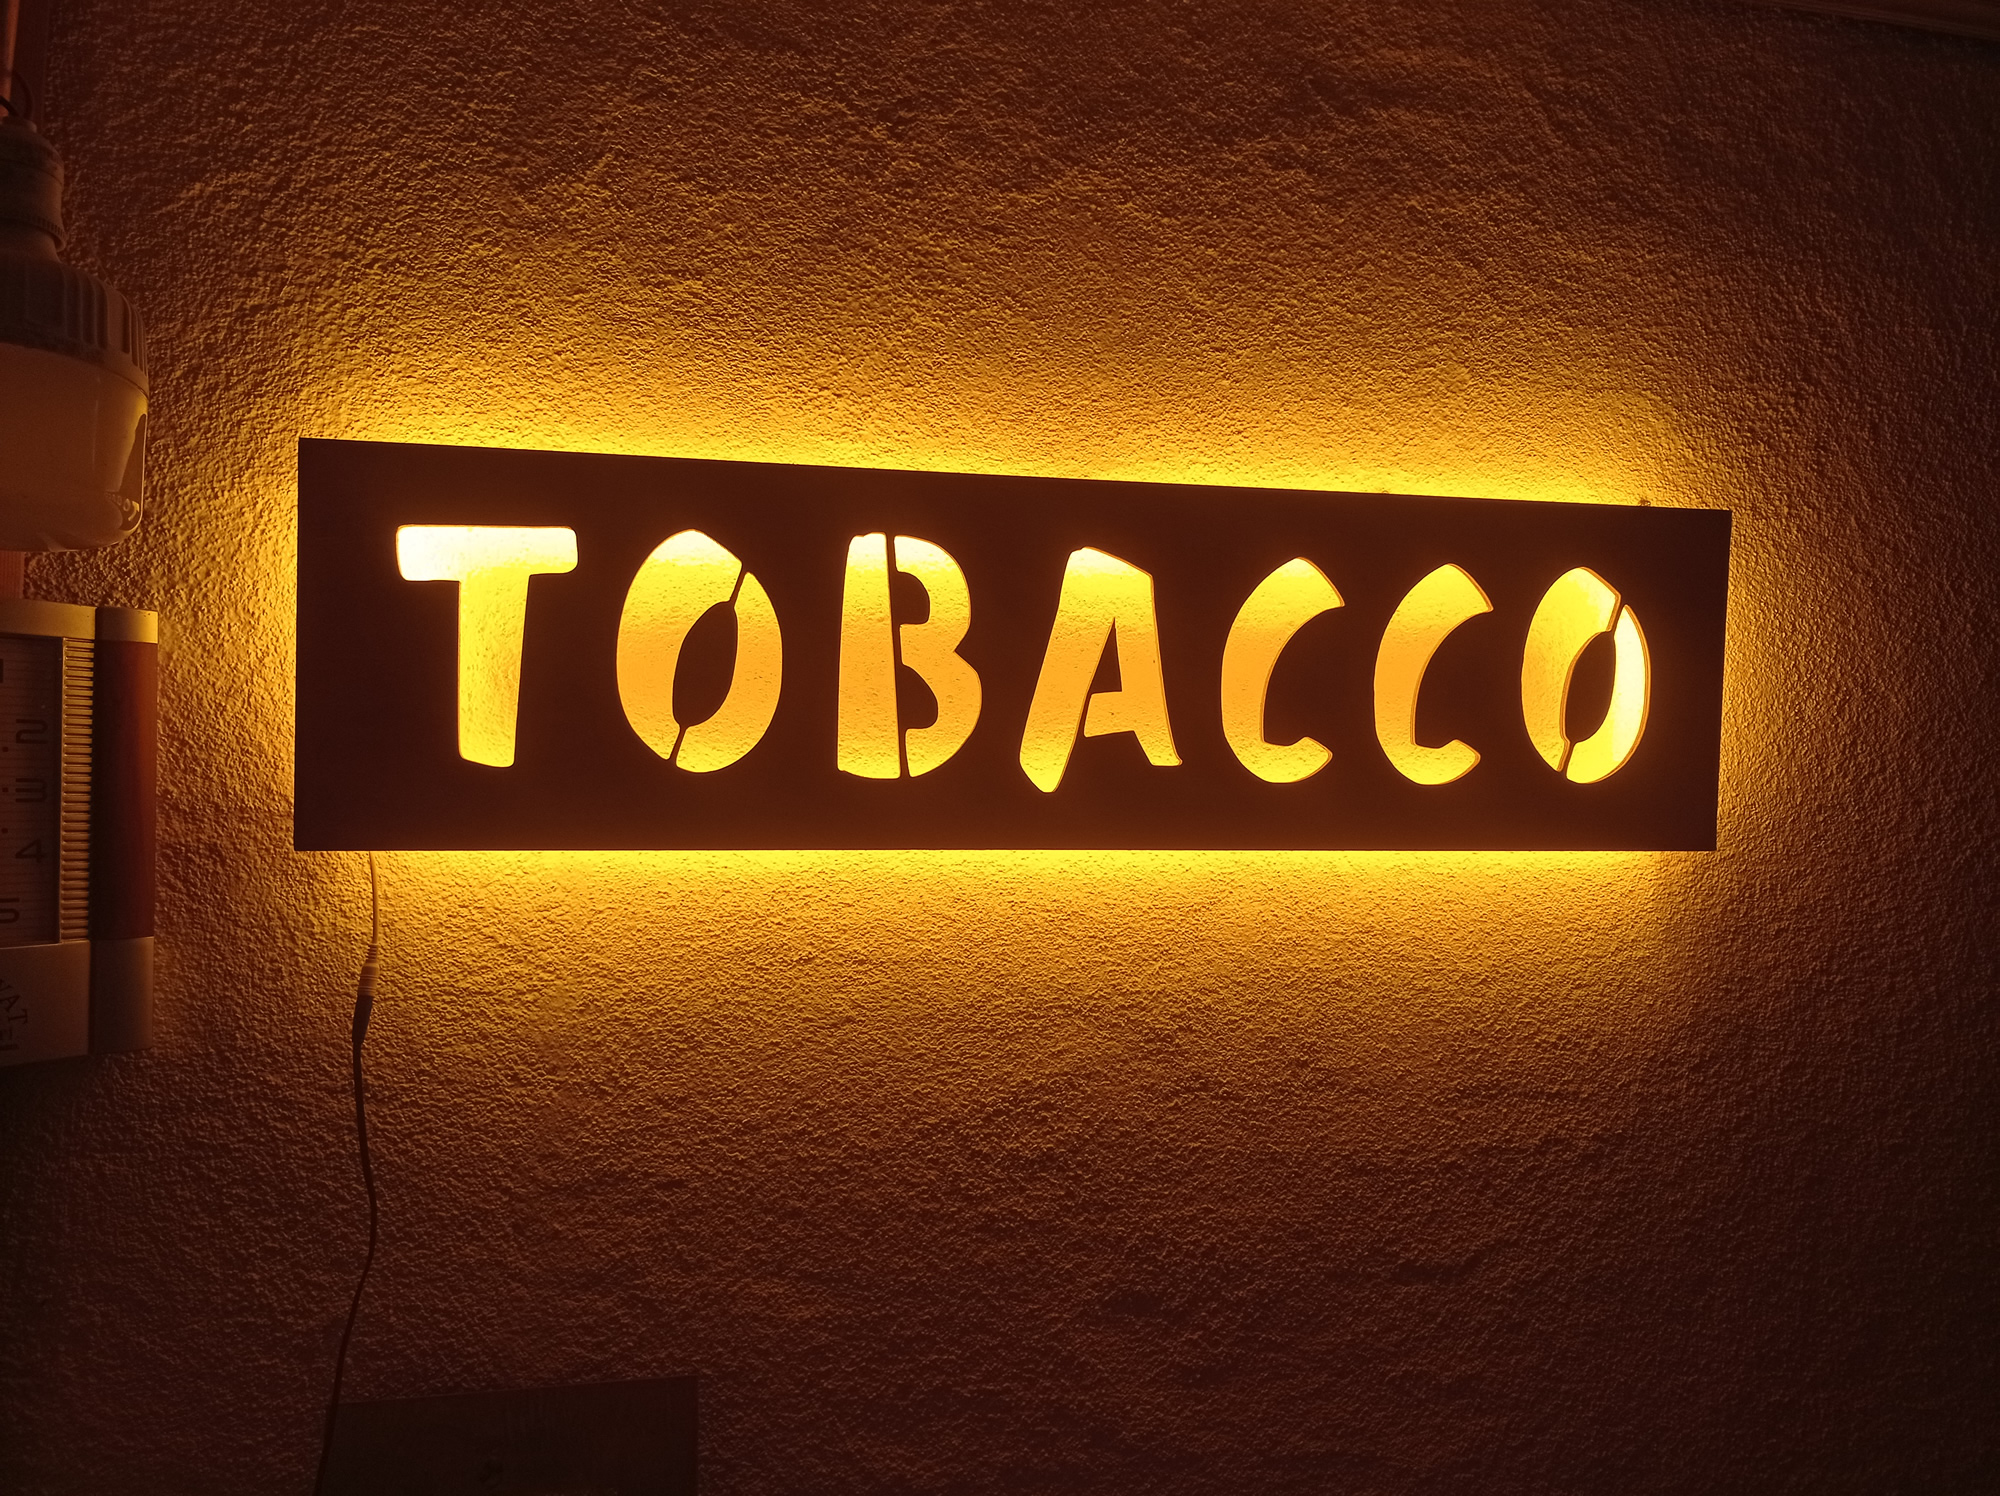 Işıklı Tobacco Tabelası